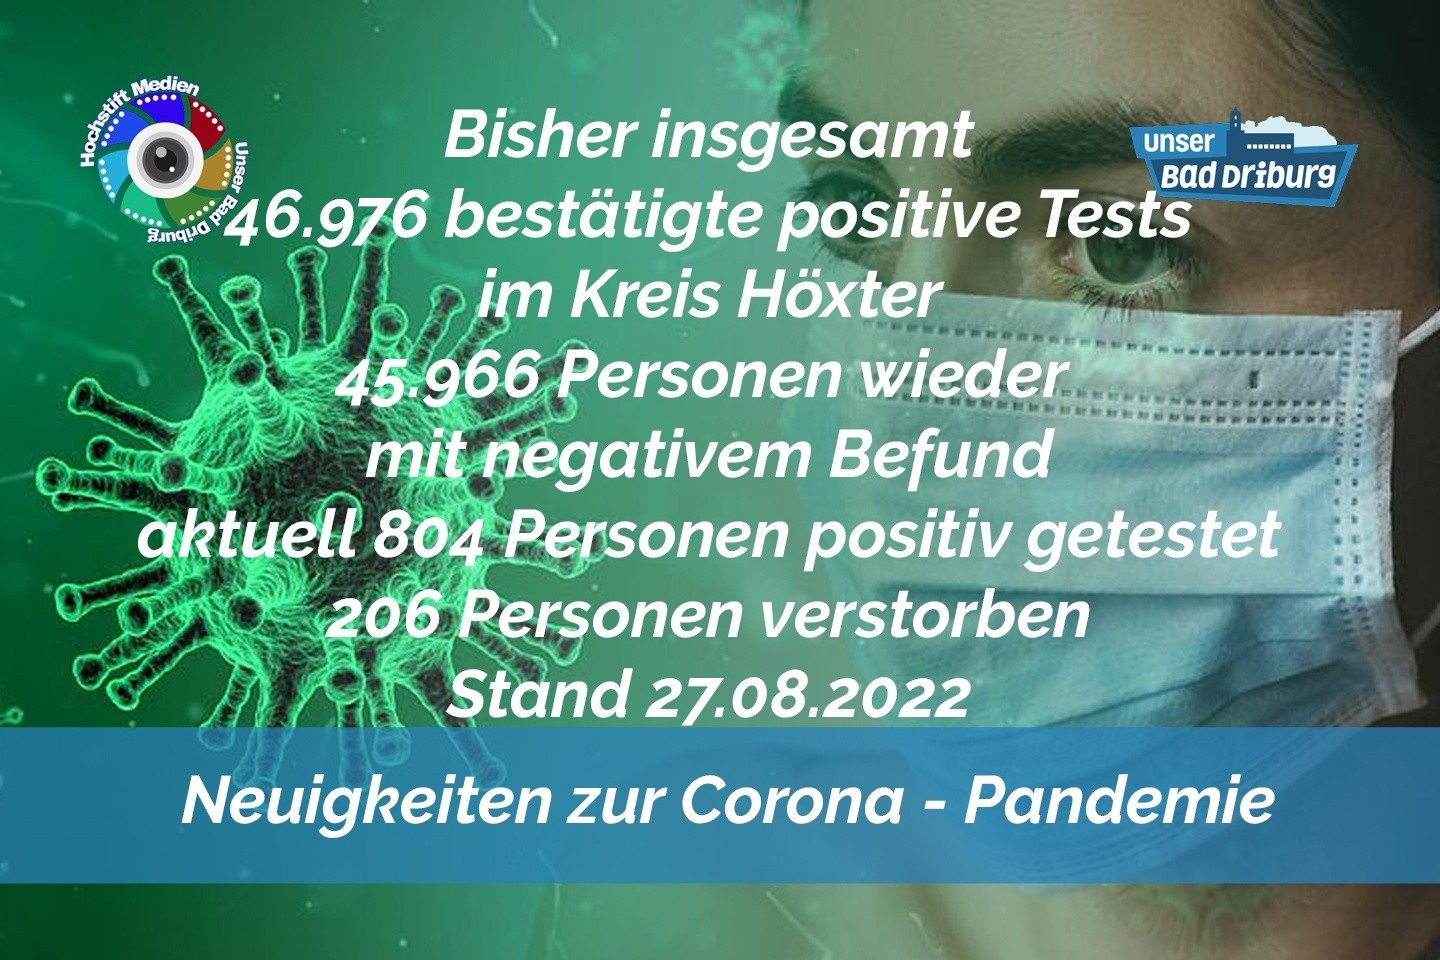 Update 27. August 2022: 72 weitere amtlich positive Tests im Kreis Höxter